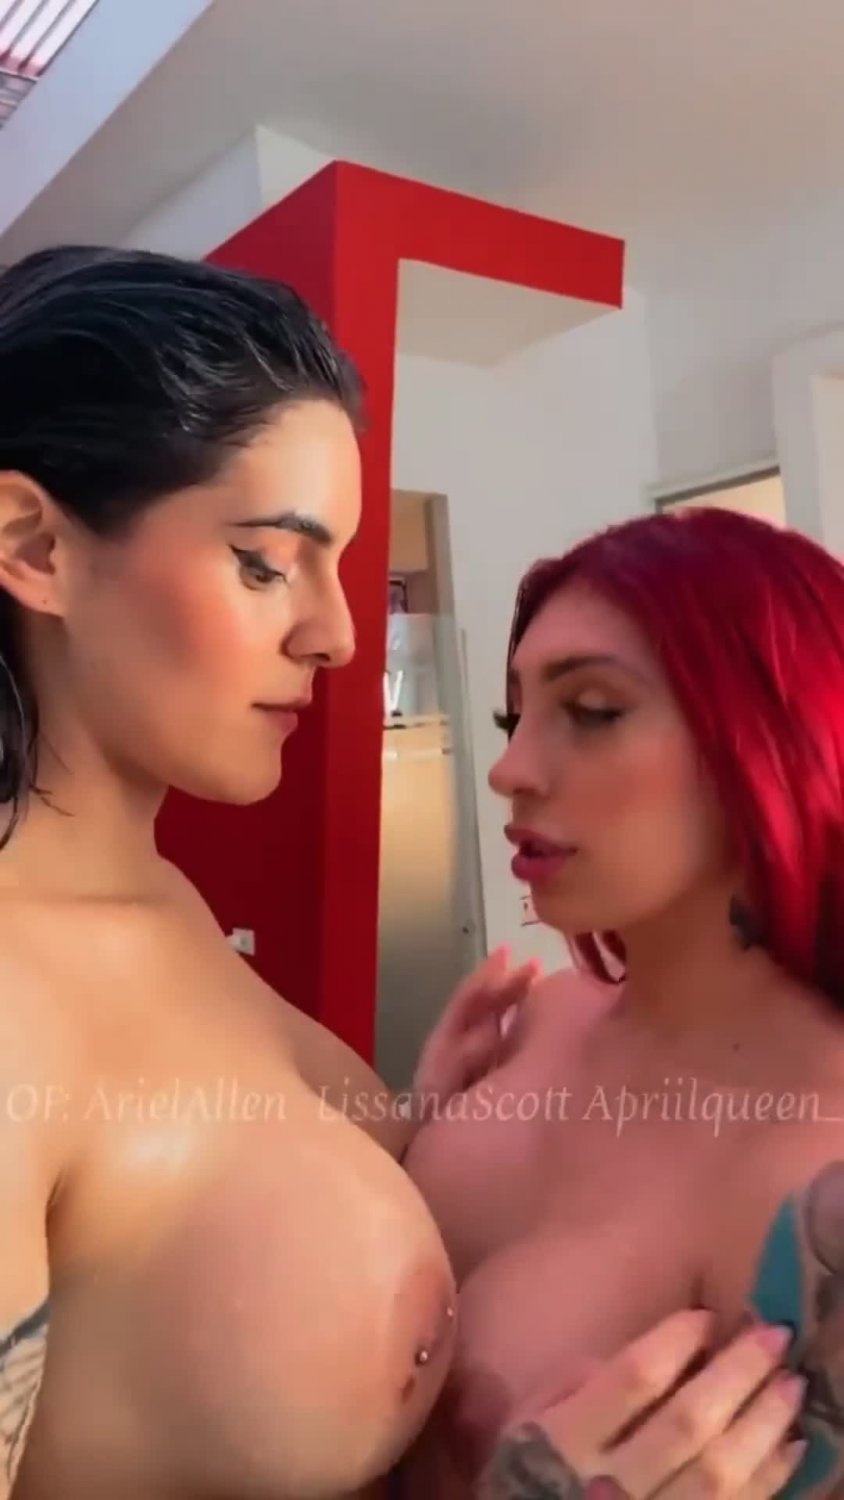 Ariel allen porn